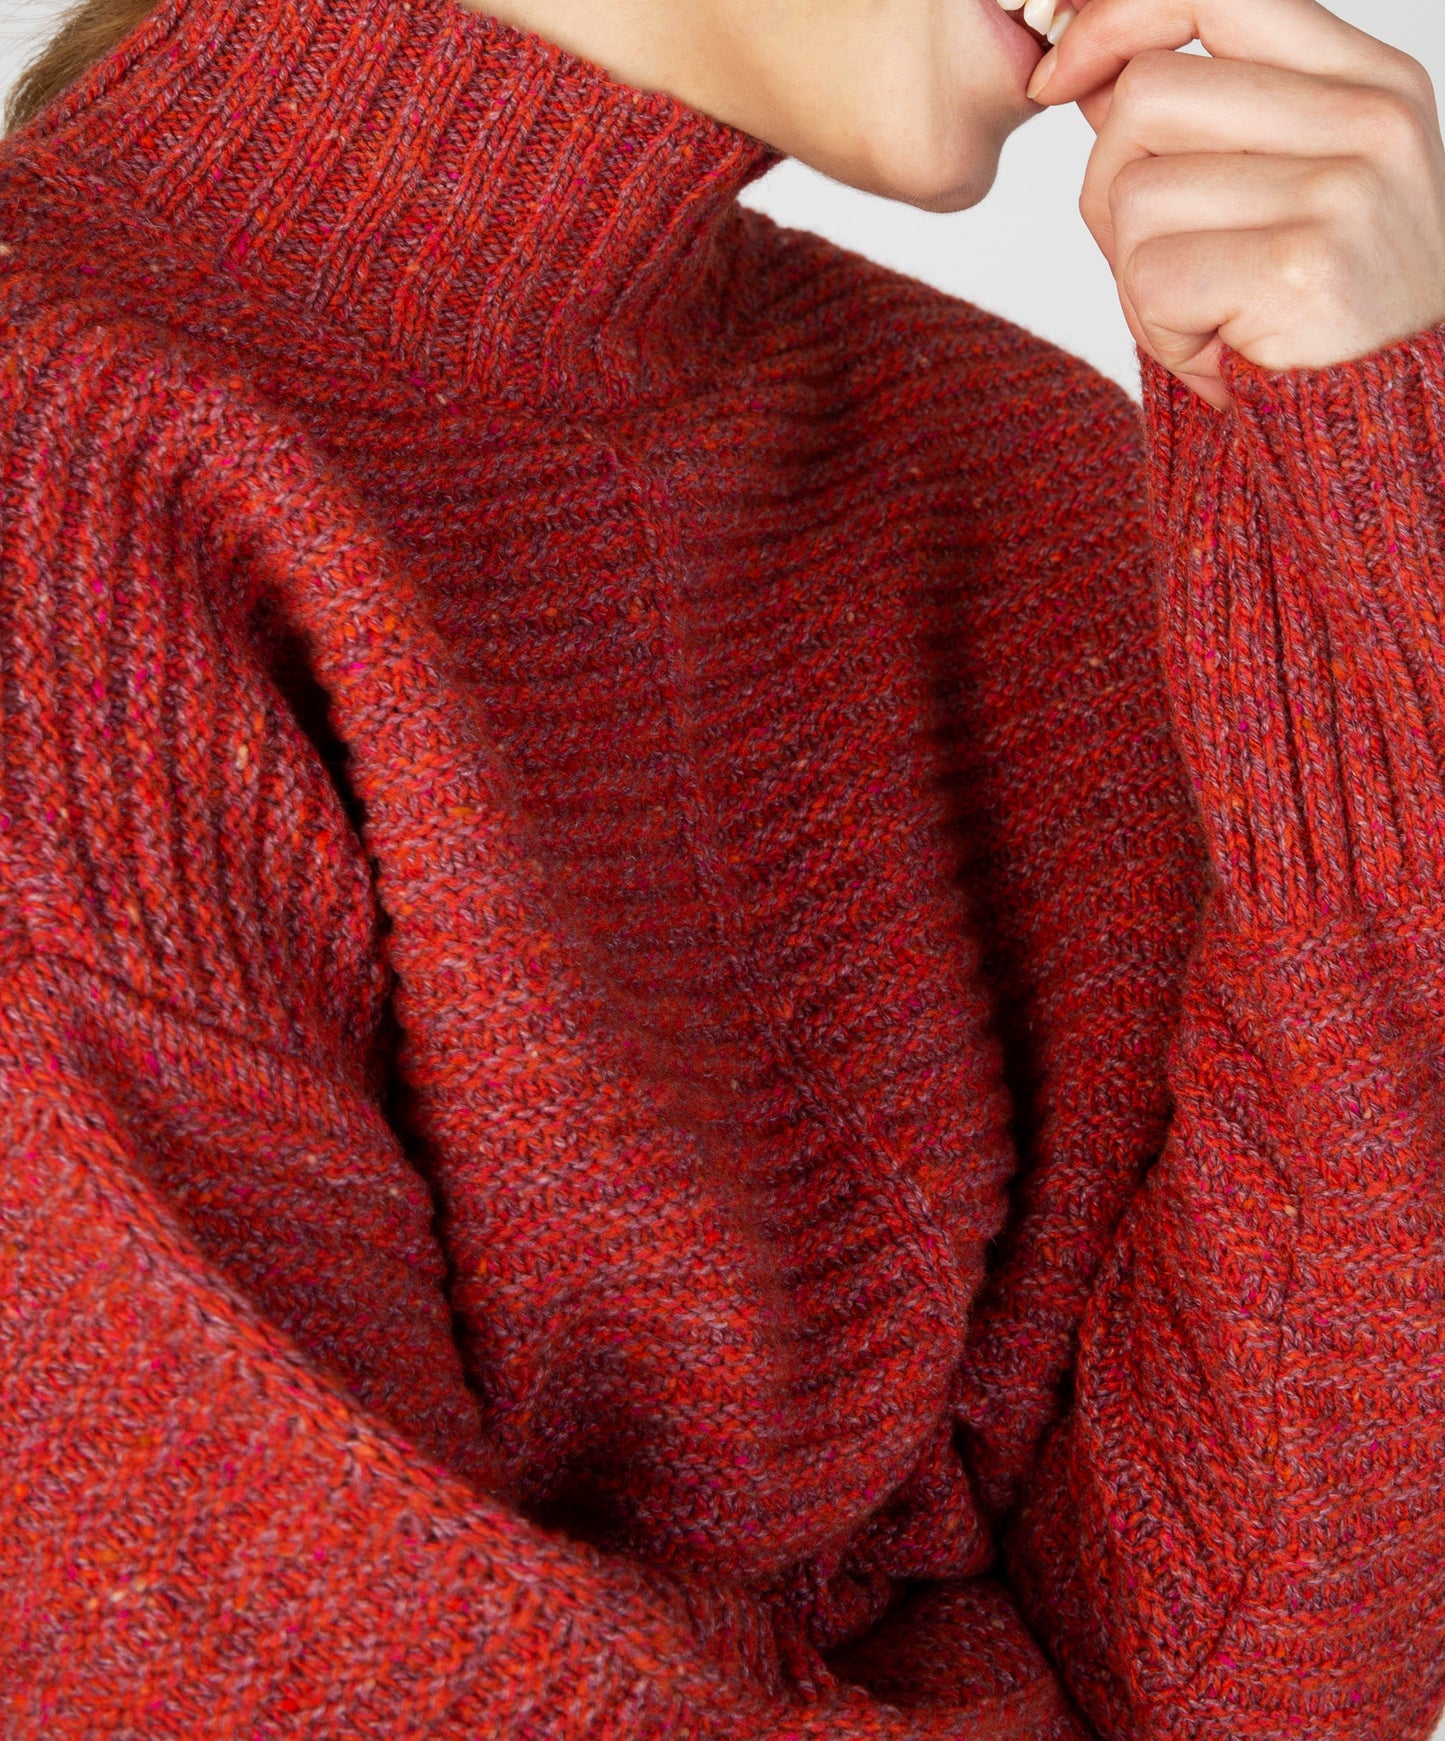 IrelandsEye Knitwear ‘Iris’ Contrast Panel Funnel Neck Sweater Sunset